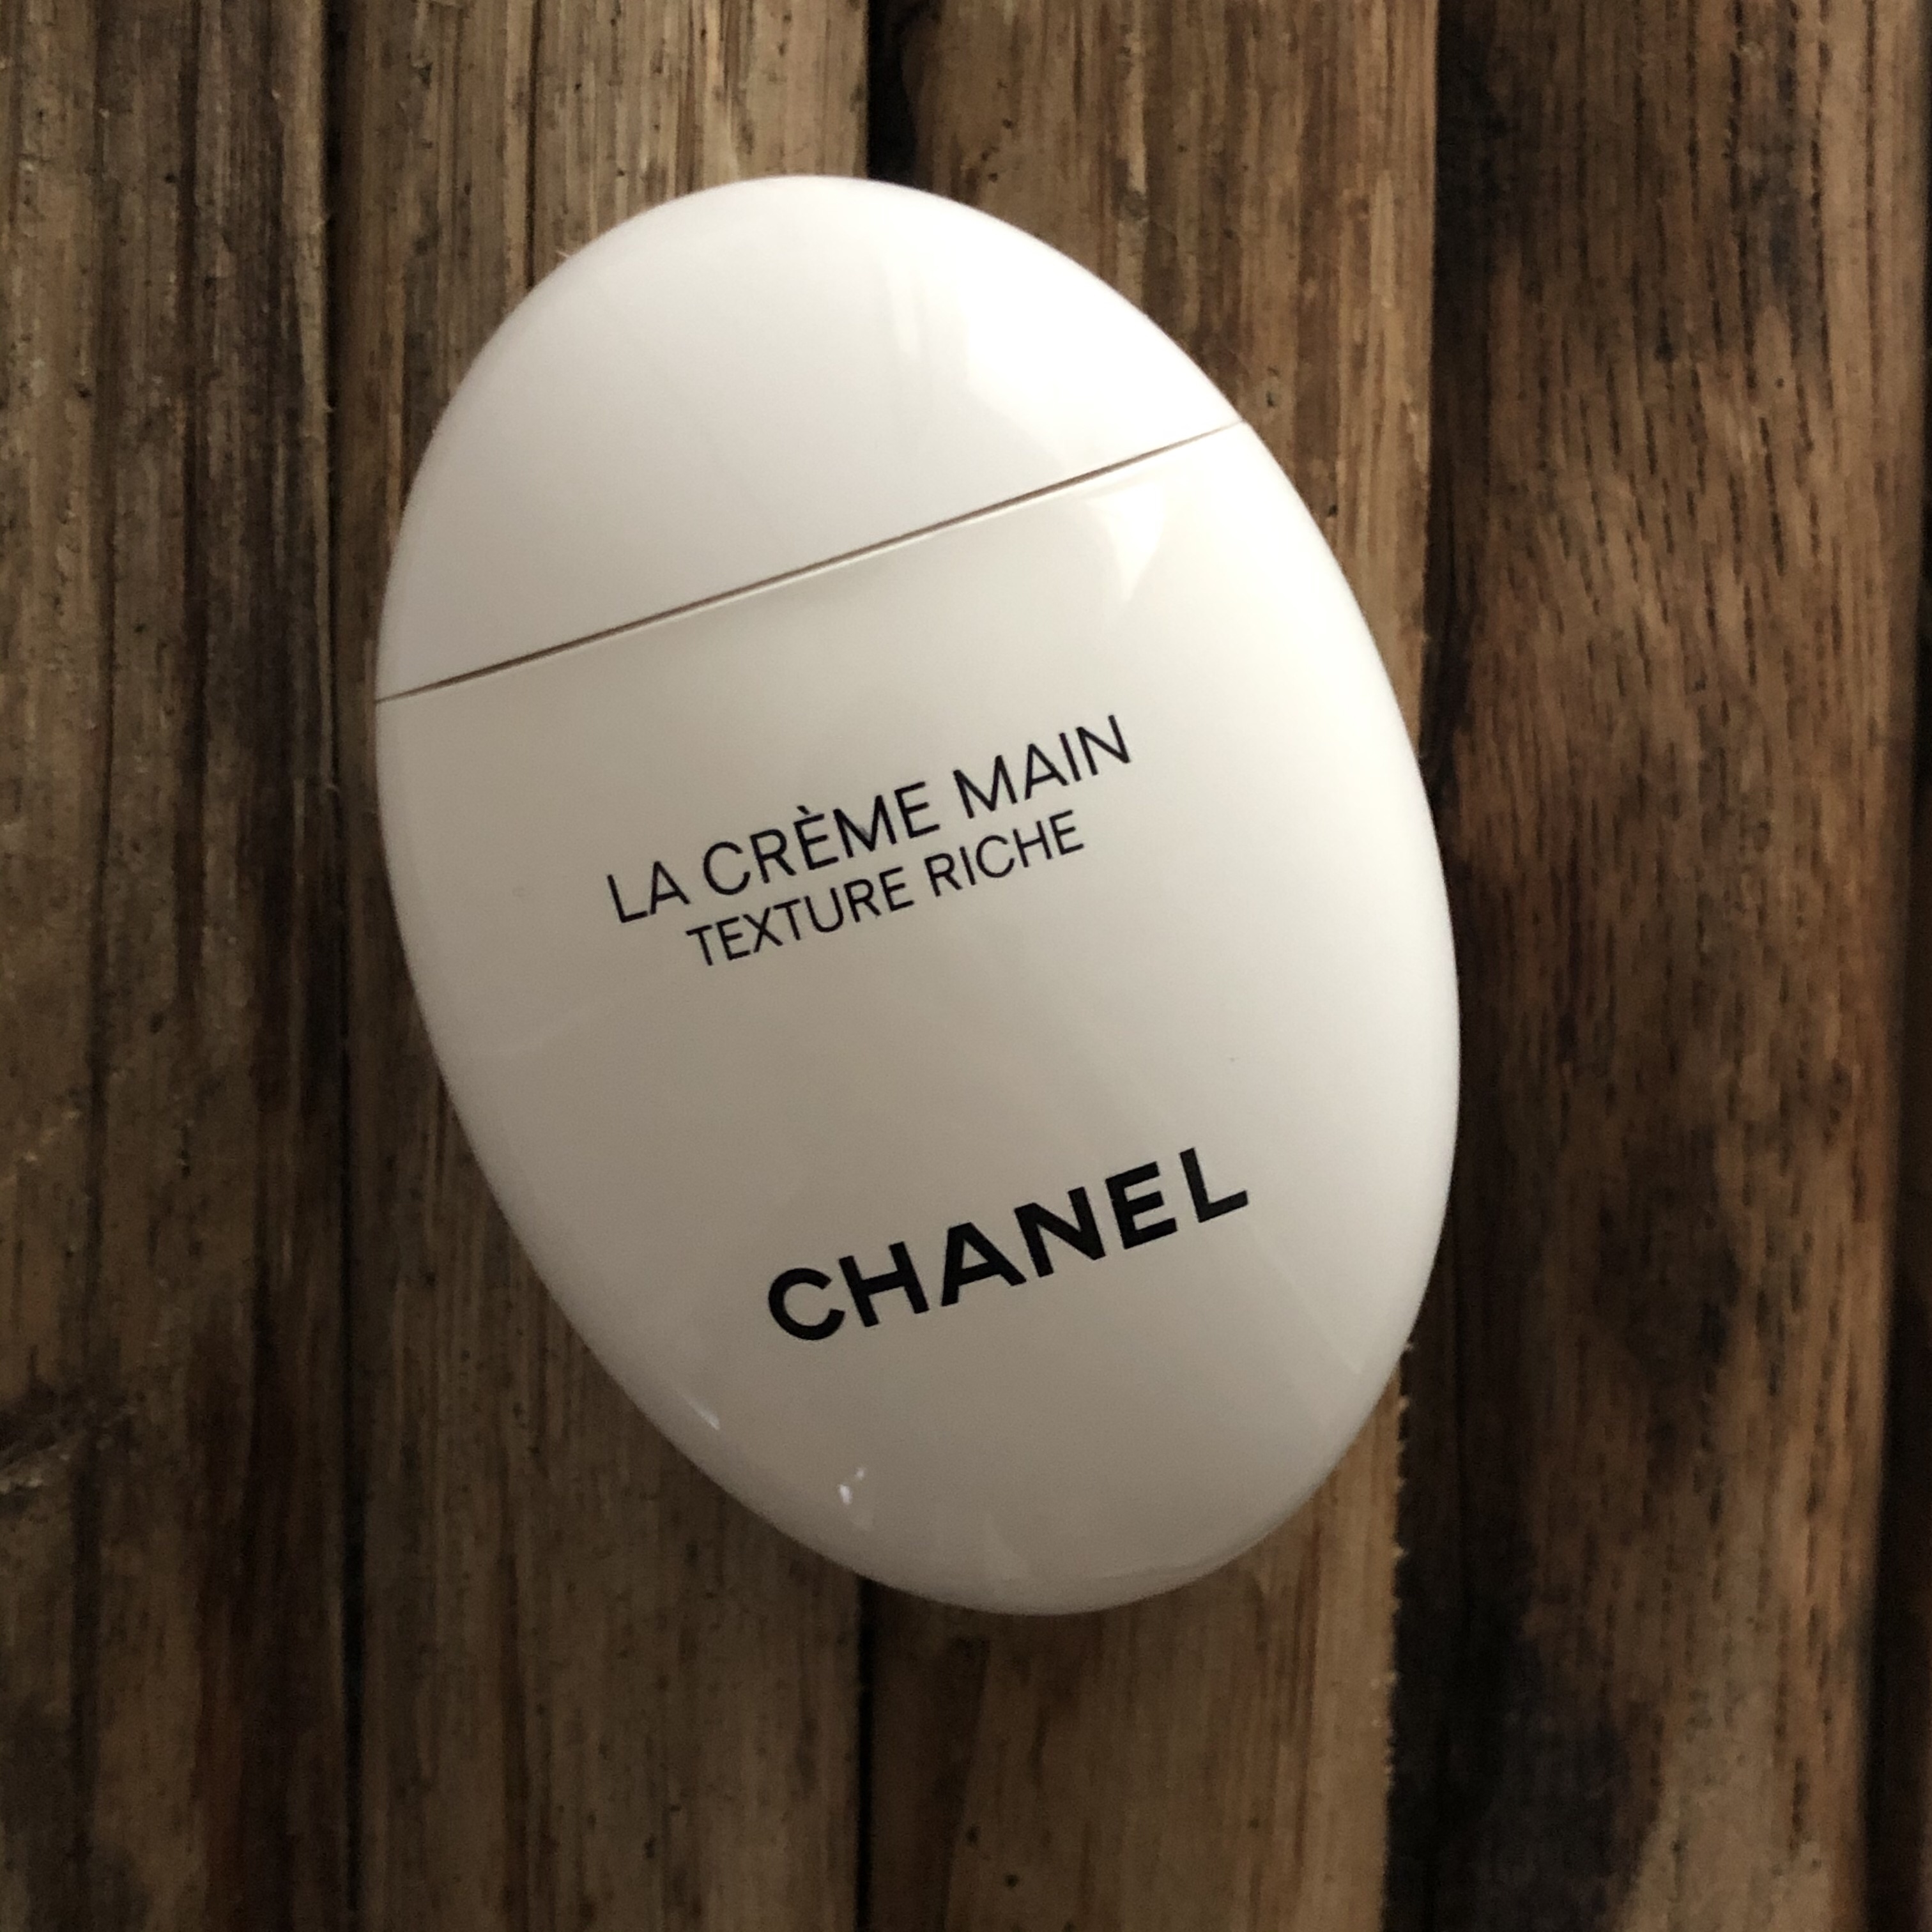 Chanel Release La Crème Main Texture Riche - 10 Magazine